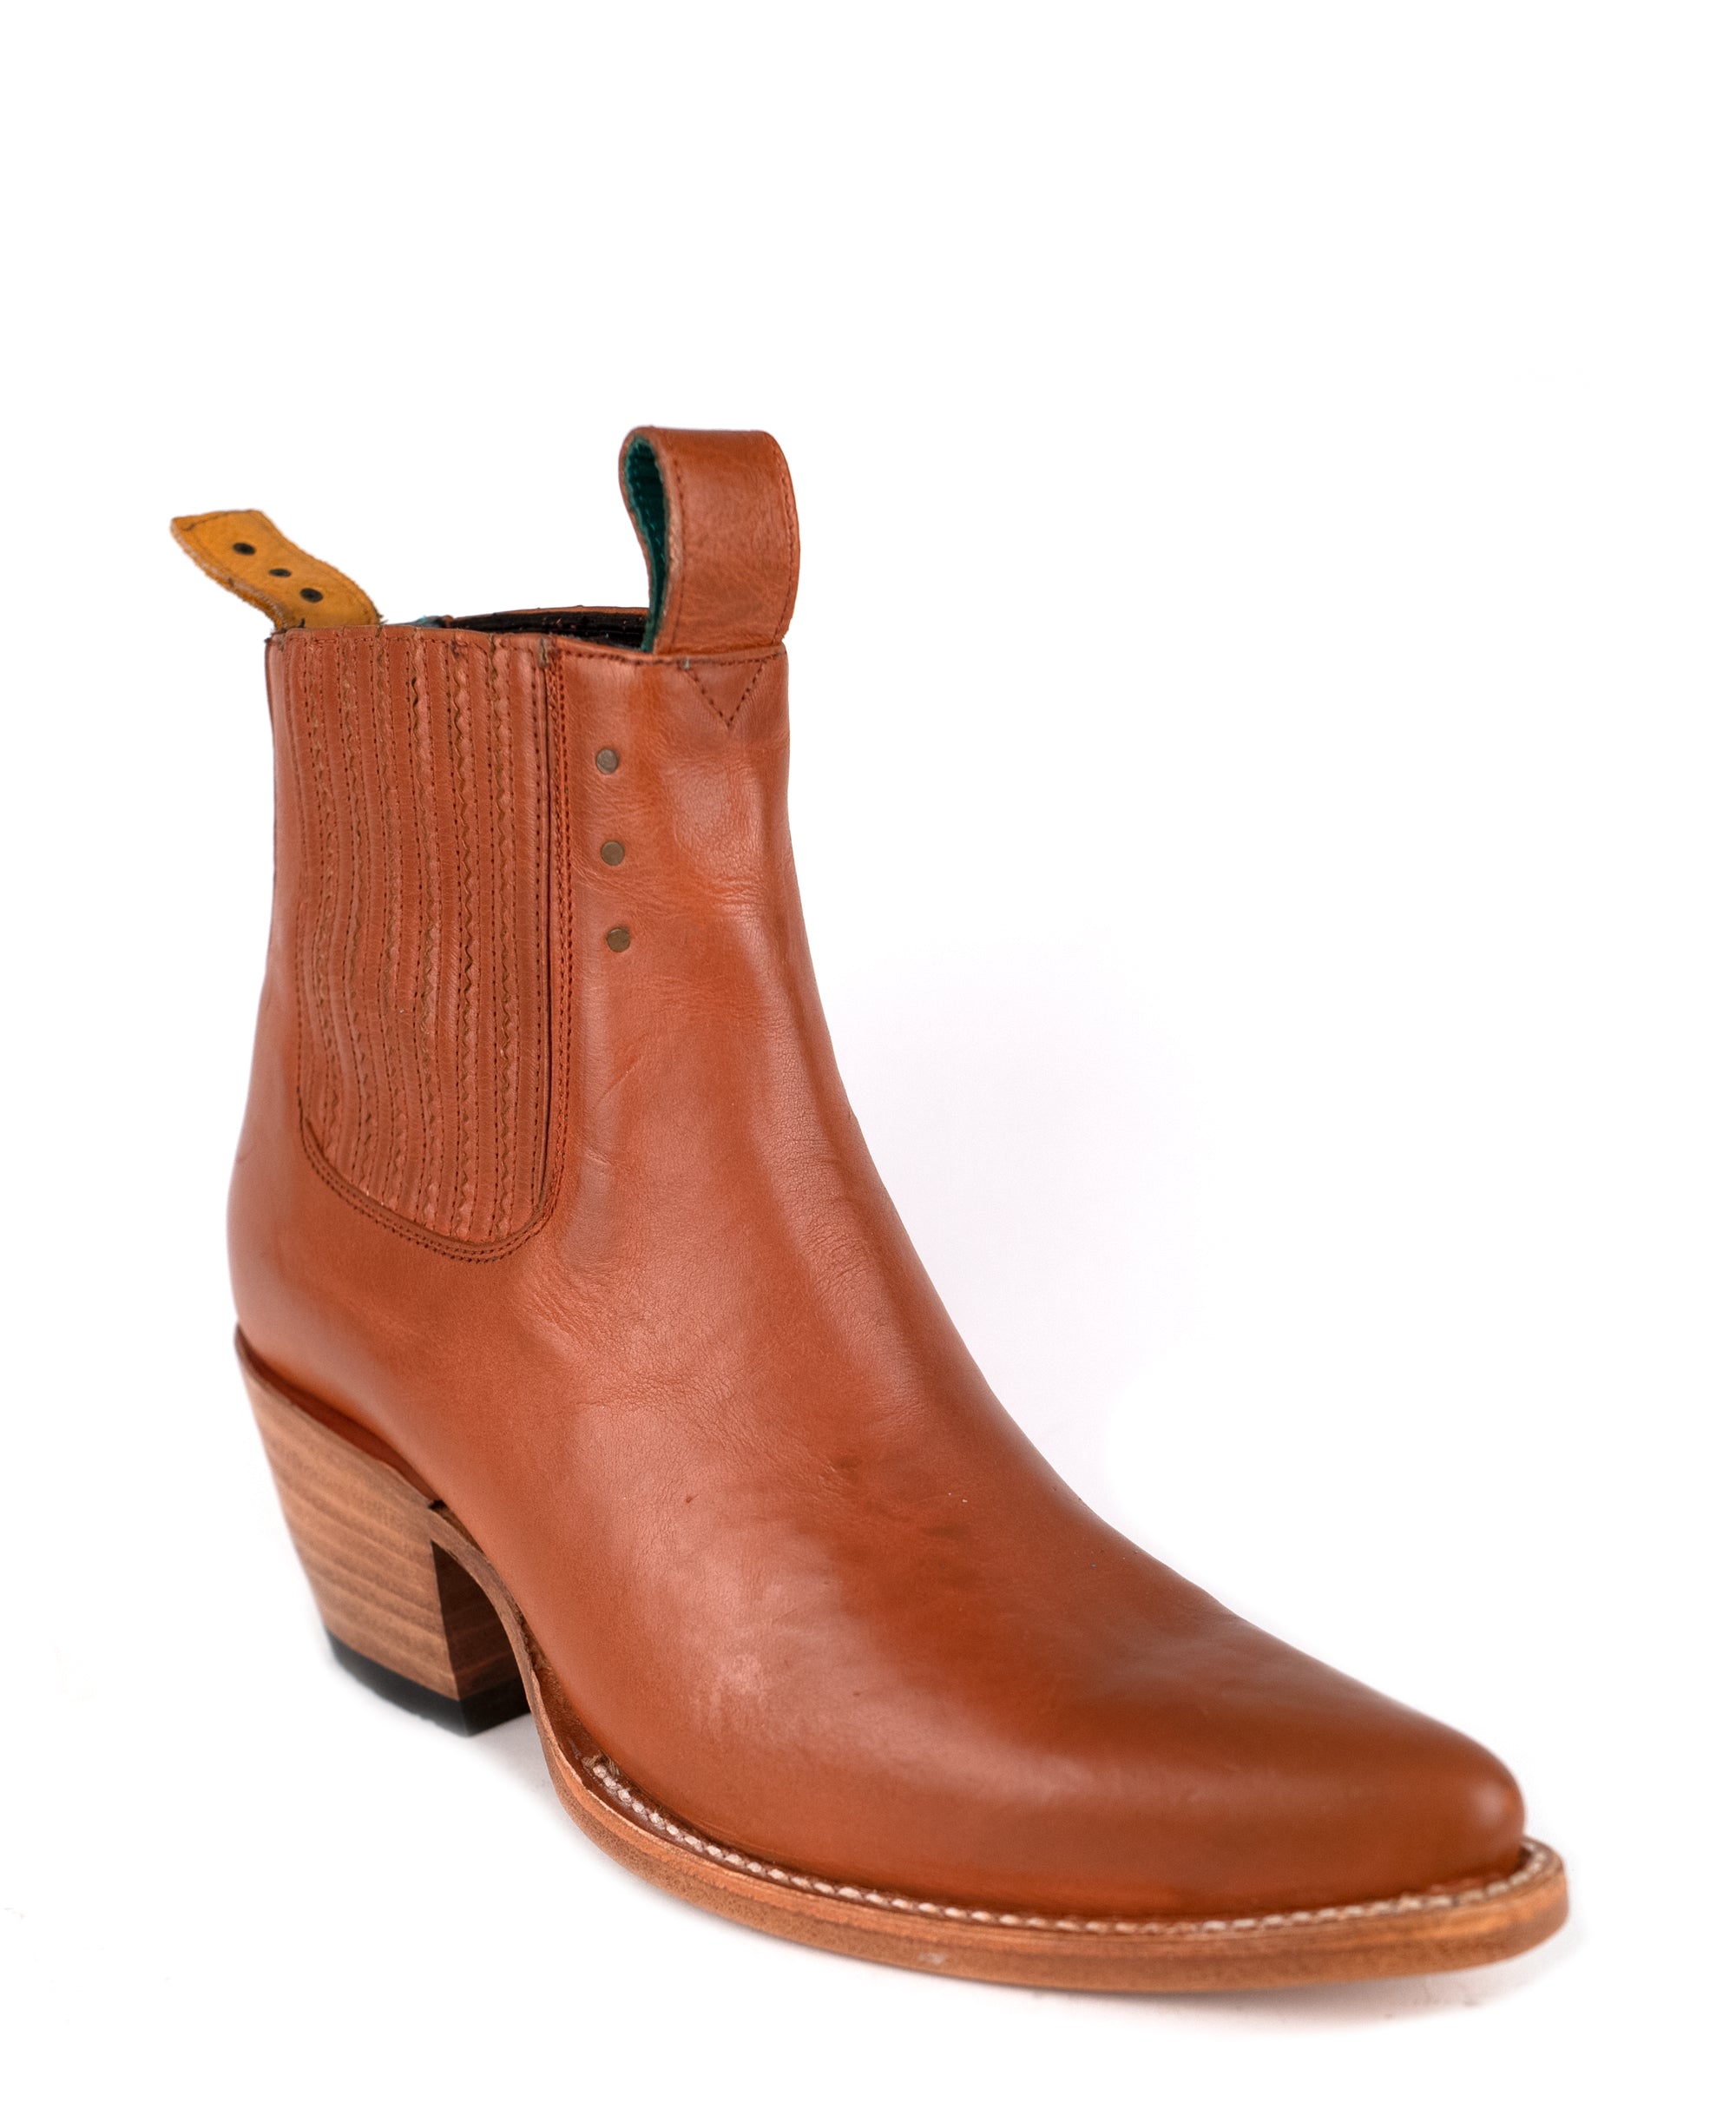 Dejlig Tick kritiker No.1001 FREEWAY chelsea boot oak veg tanned leather - pskaufmanfootwear